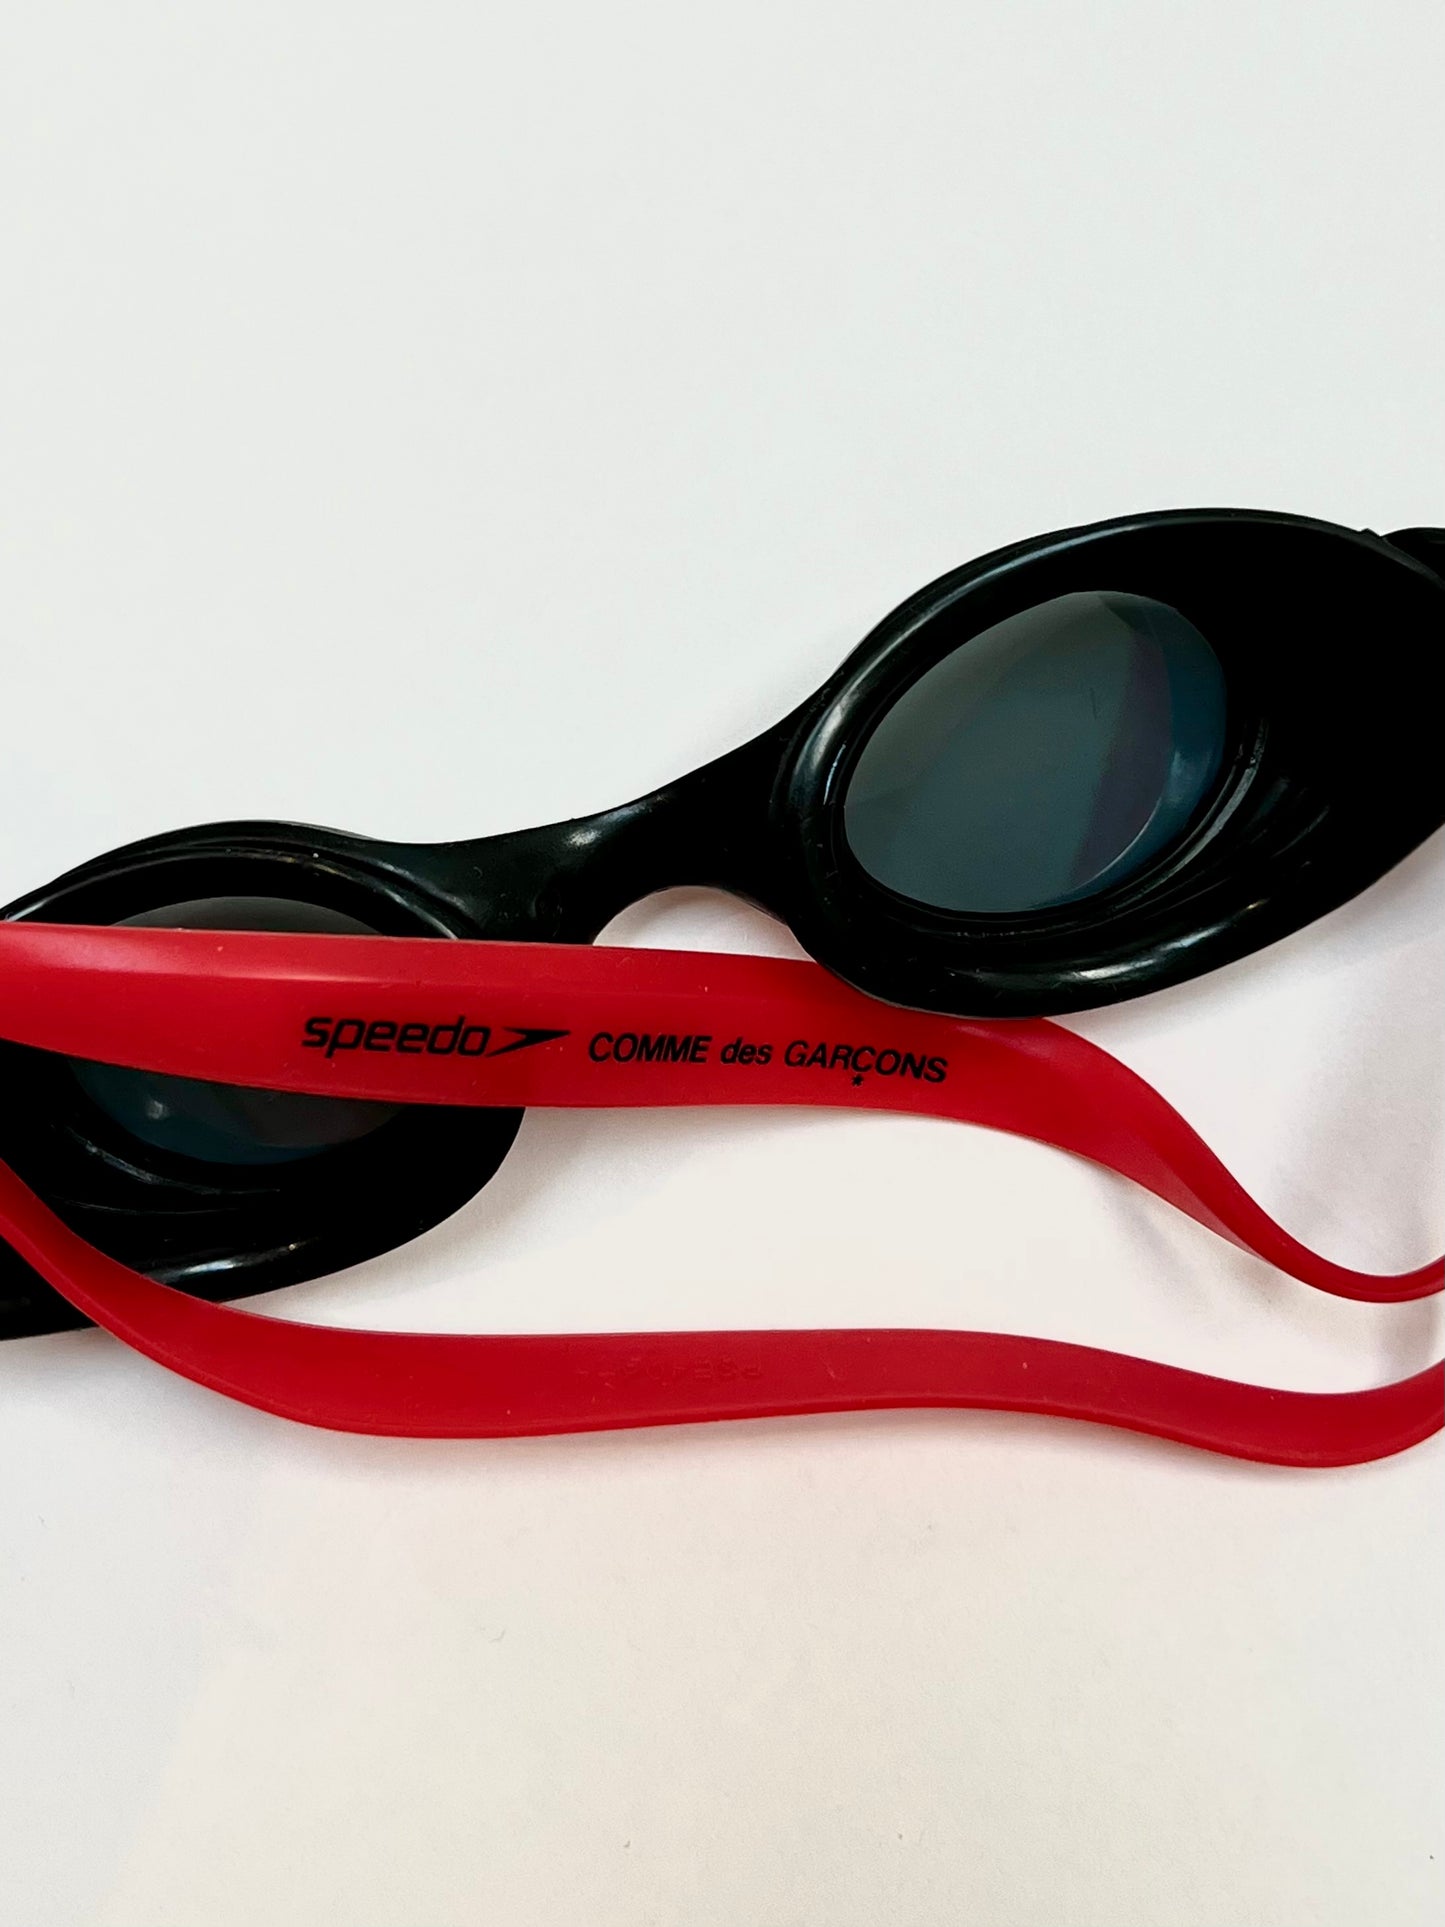 Speedo x Comme des Garçons SS 2006 goggles